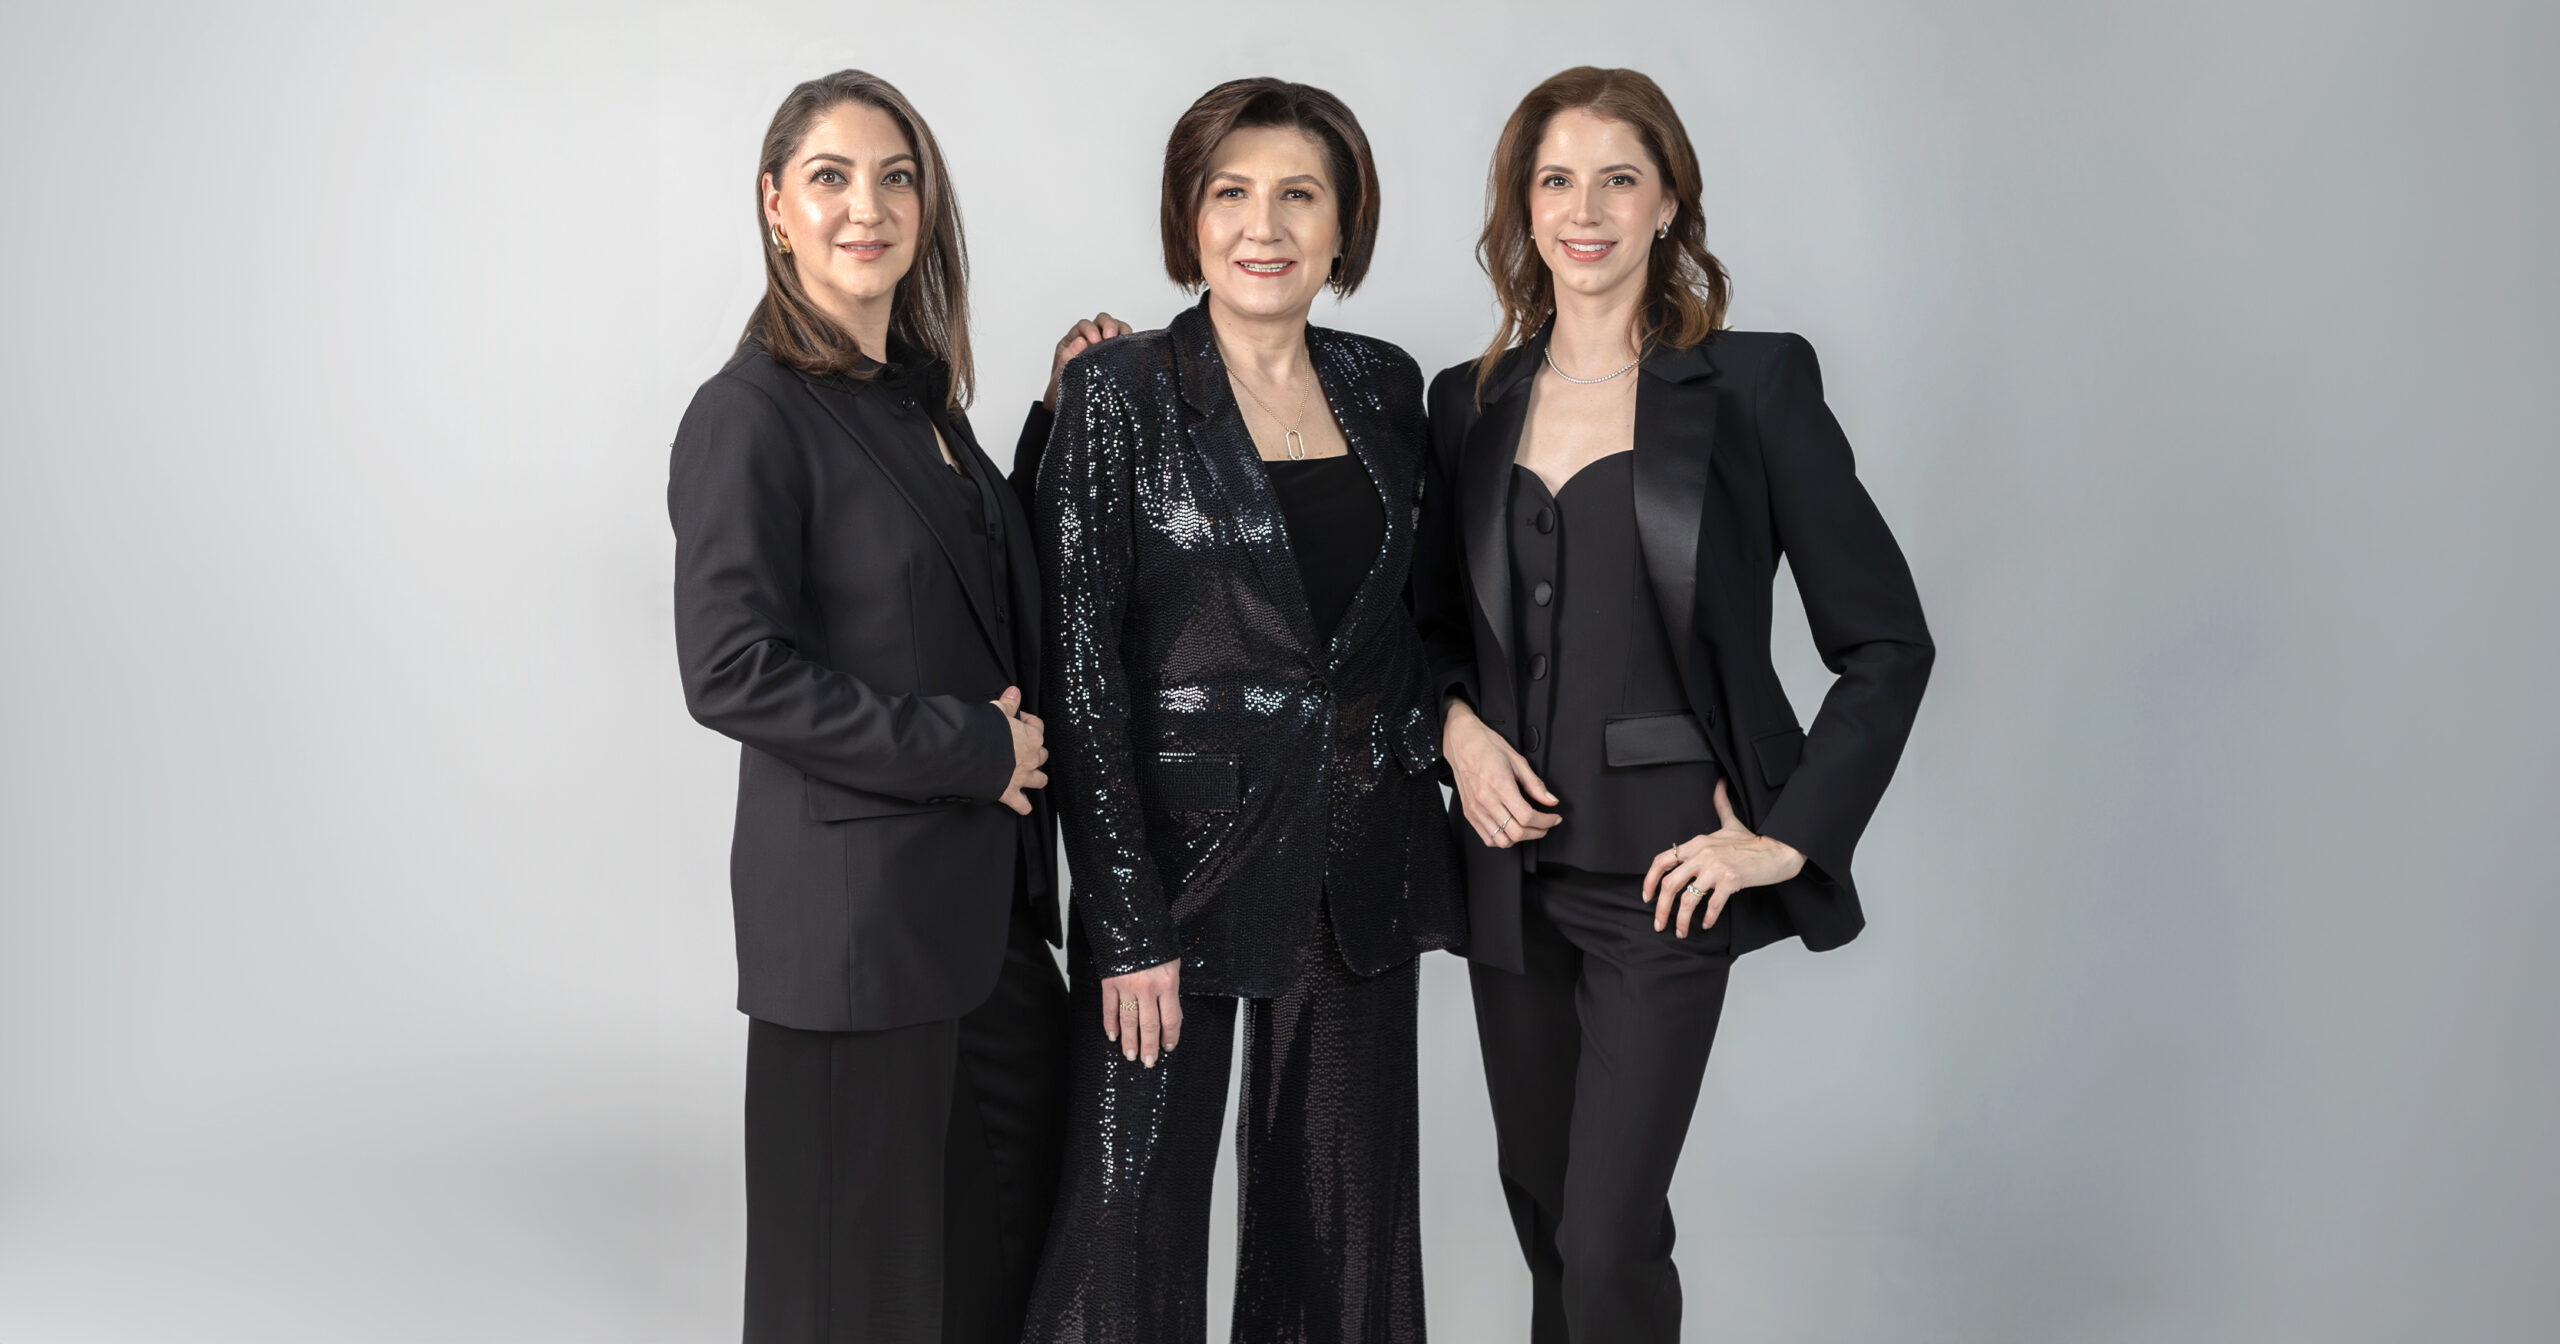 Alejandra Enríquez, junto a las hermanas Paty y Mariana Lugo, son agentes de cambio, líderes de proyectos y de empresas que rompen paradigmas.